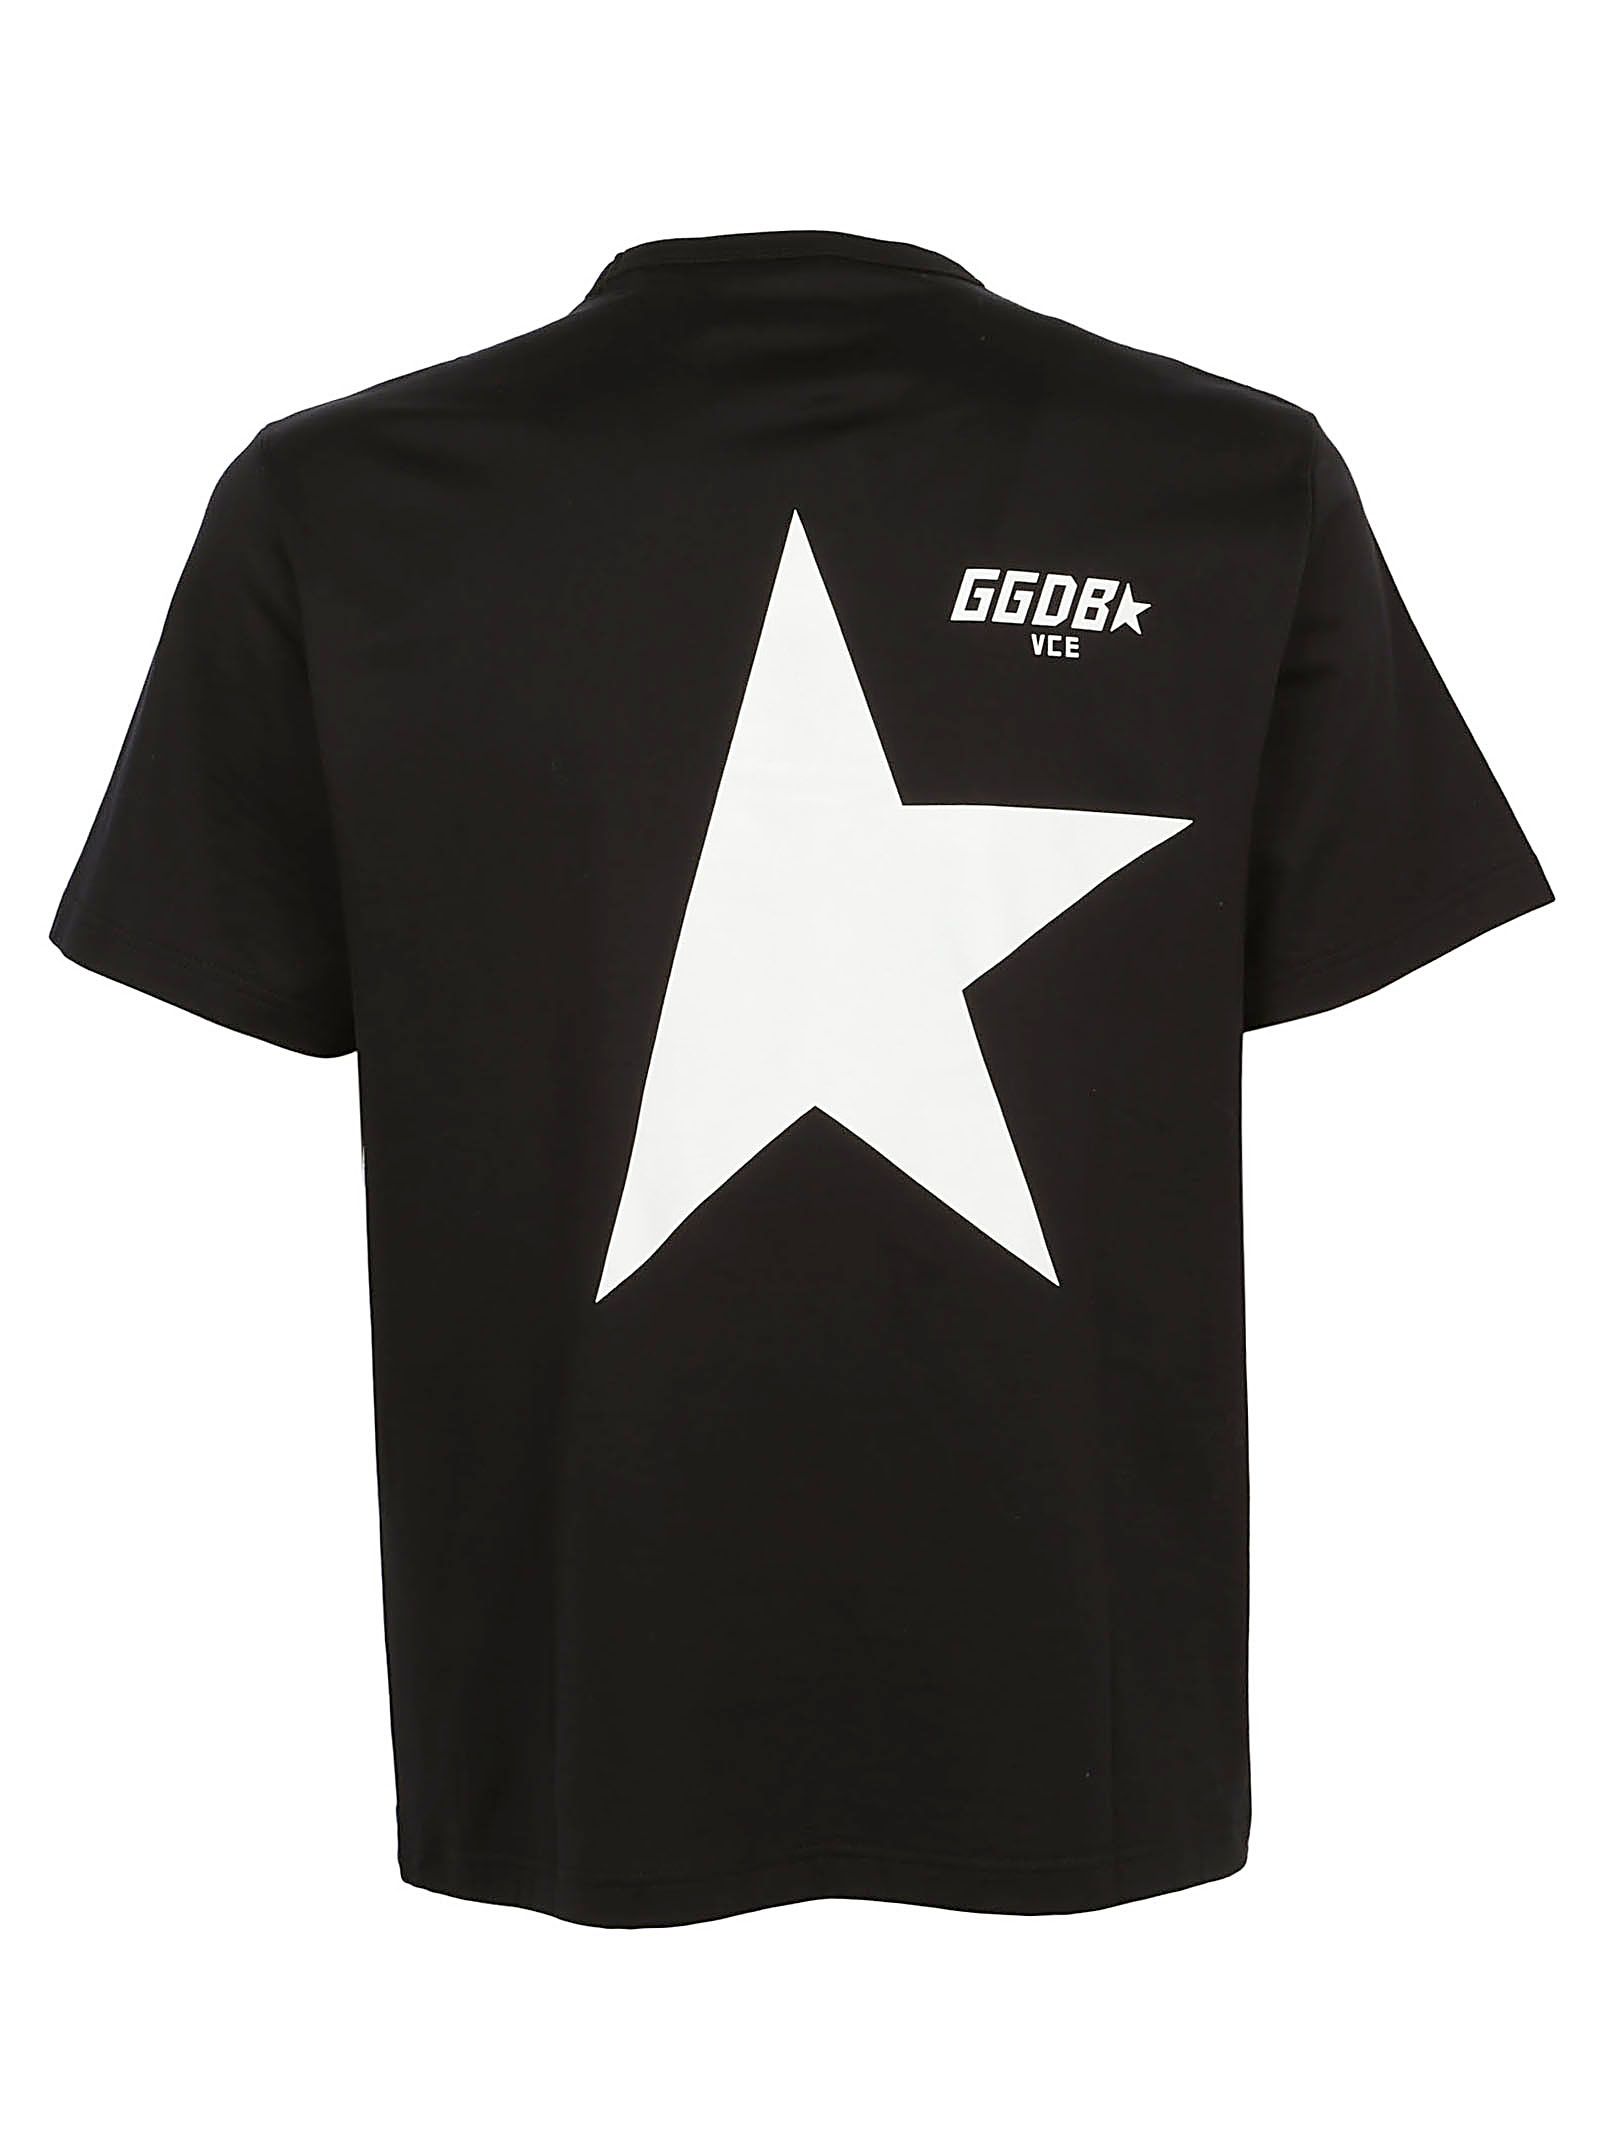 Golden Goose - Golden Goose T-shirt - Black/star, Men's Short Sleeve T